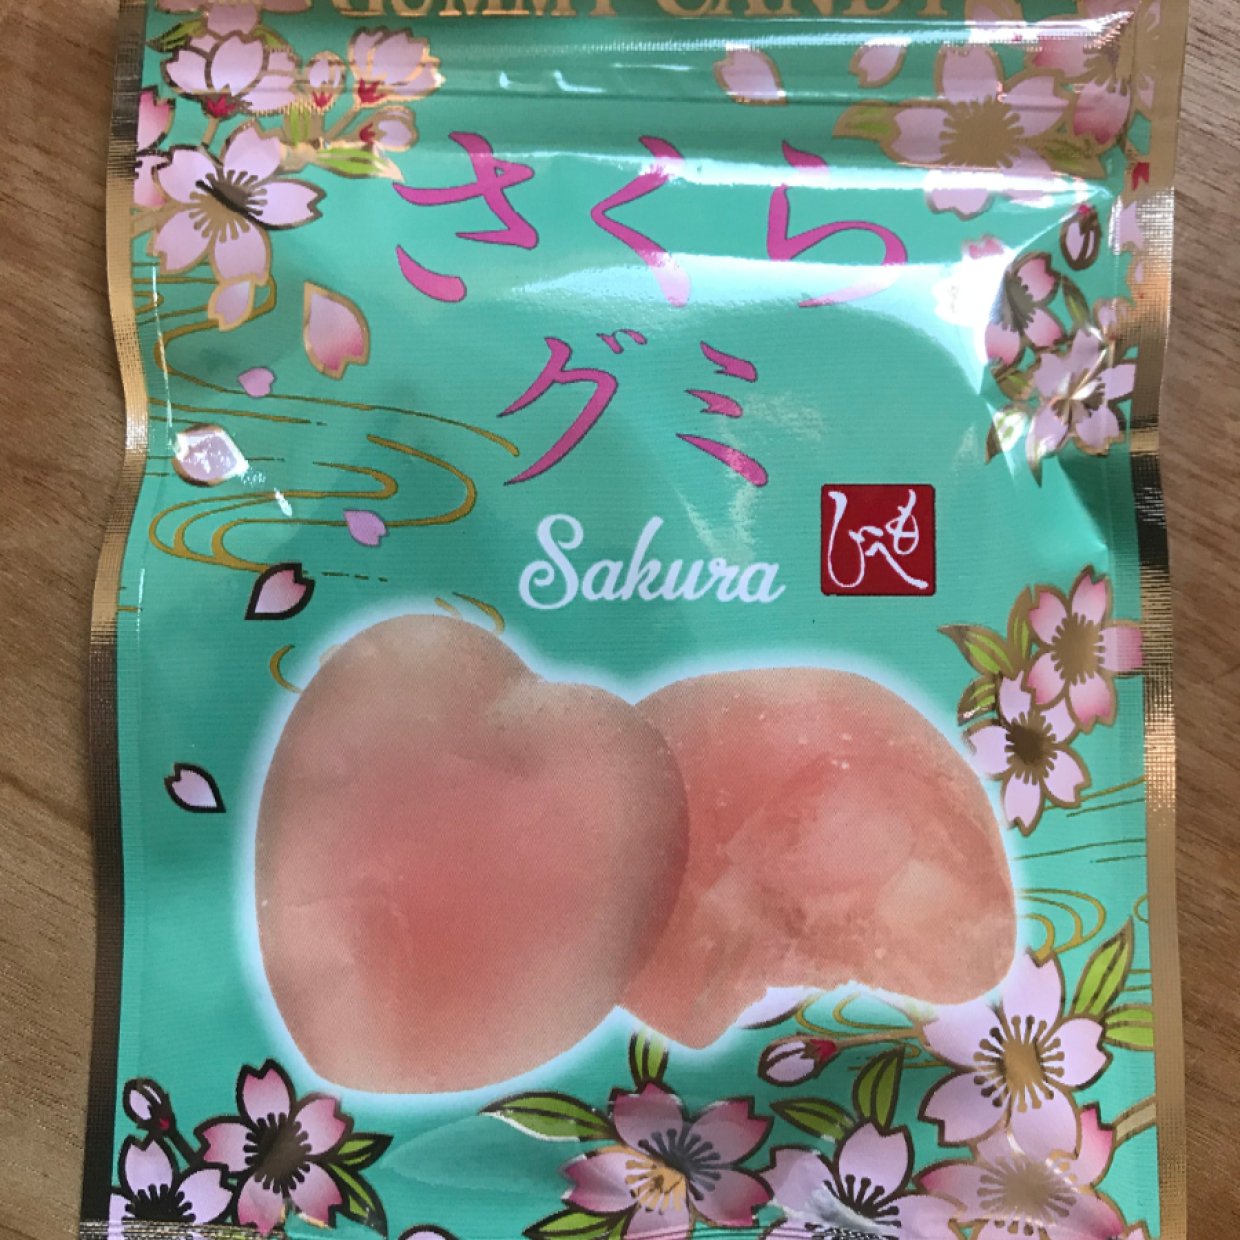  【カルディ】ふんわり桜香る「さくらグミ」が新発売！華やかなパッケージがかわいい♡ 